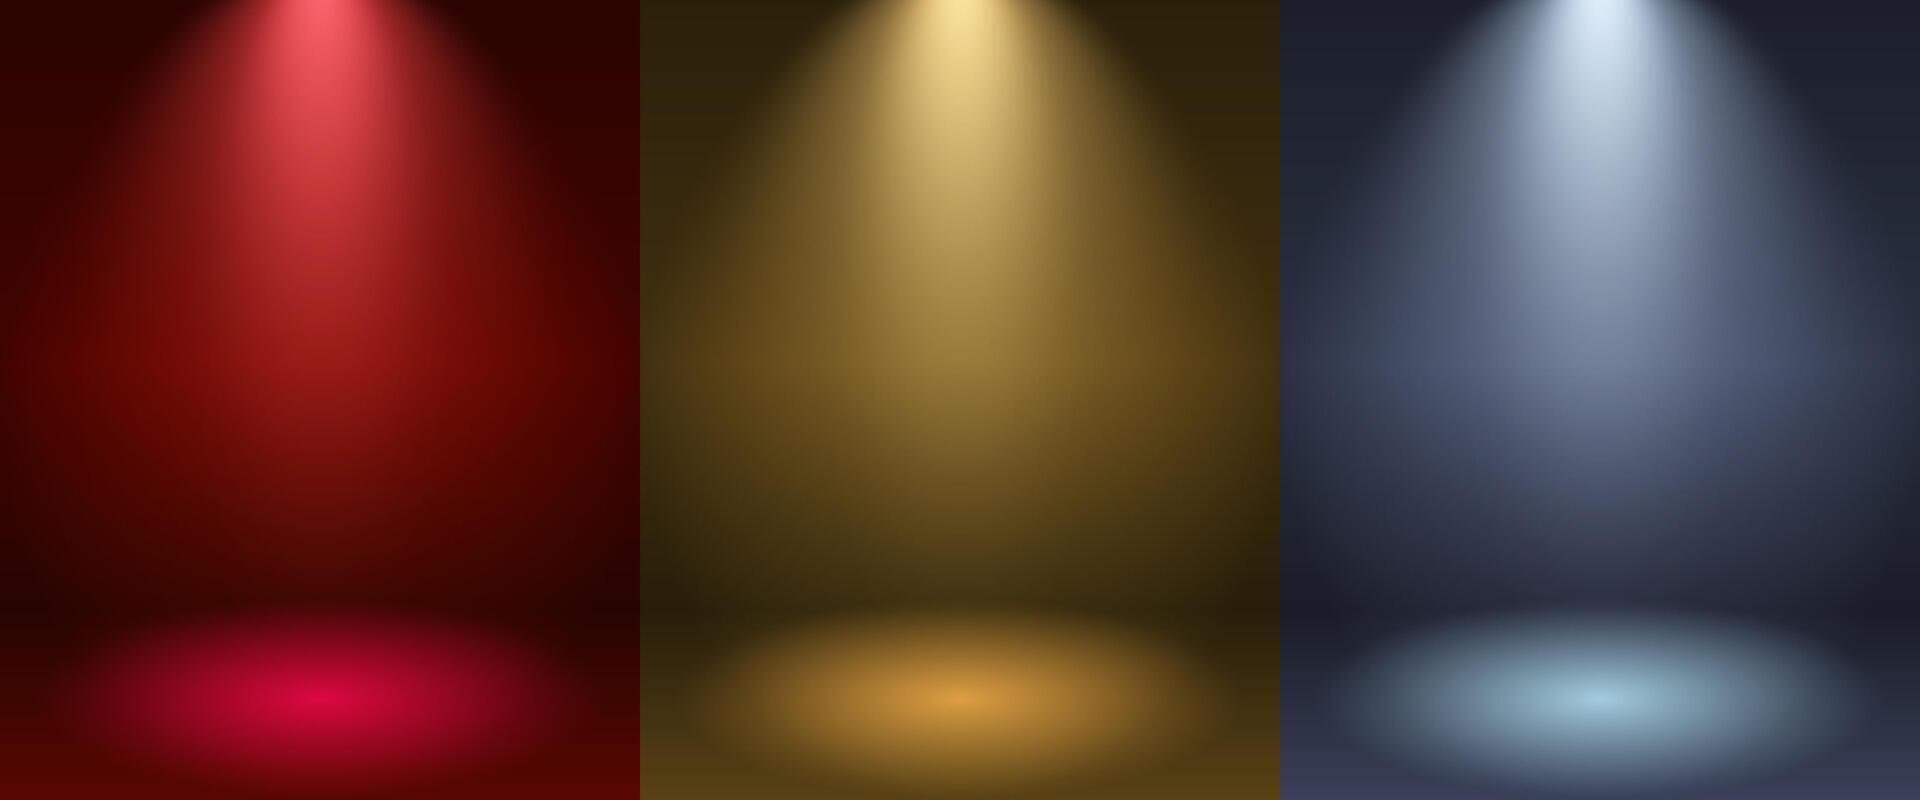 buio e riflettore minimo scena per Prodotto Schermo presentazione, leggero effetto, leggero rosso oro bianca colore, vettore illustrazione